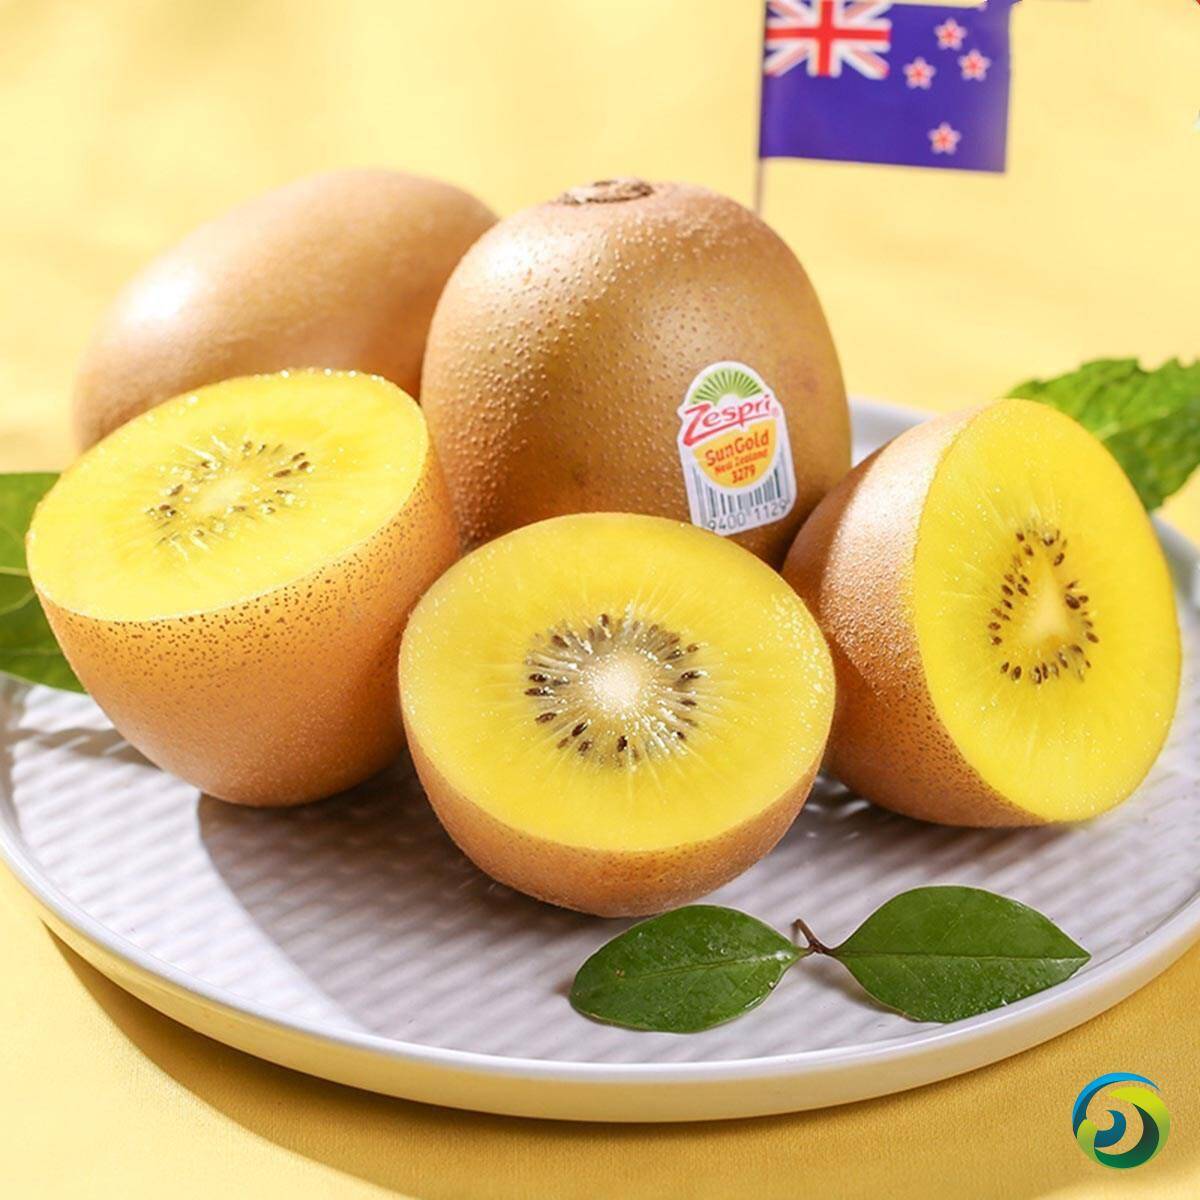 佳沛2019新西兰产季即将完美落幕 金果出货量首超绿果 | 国际果蔬报道